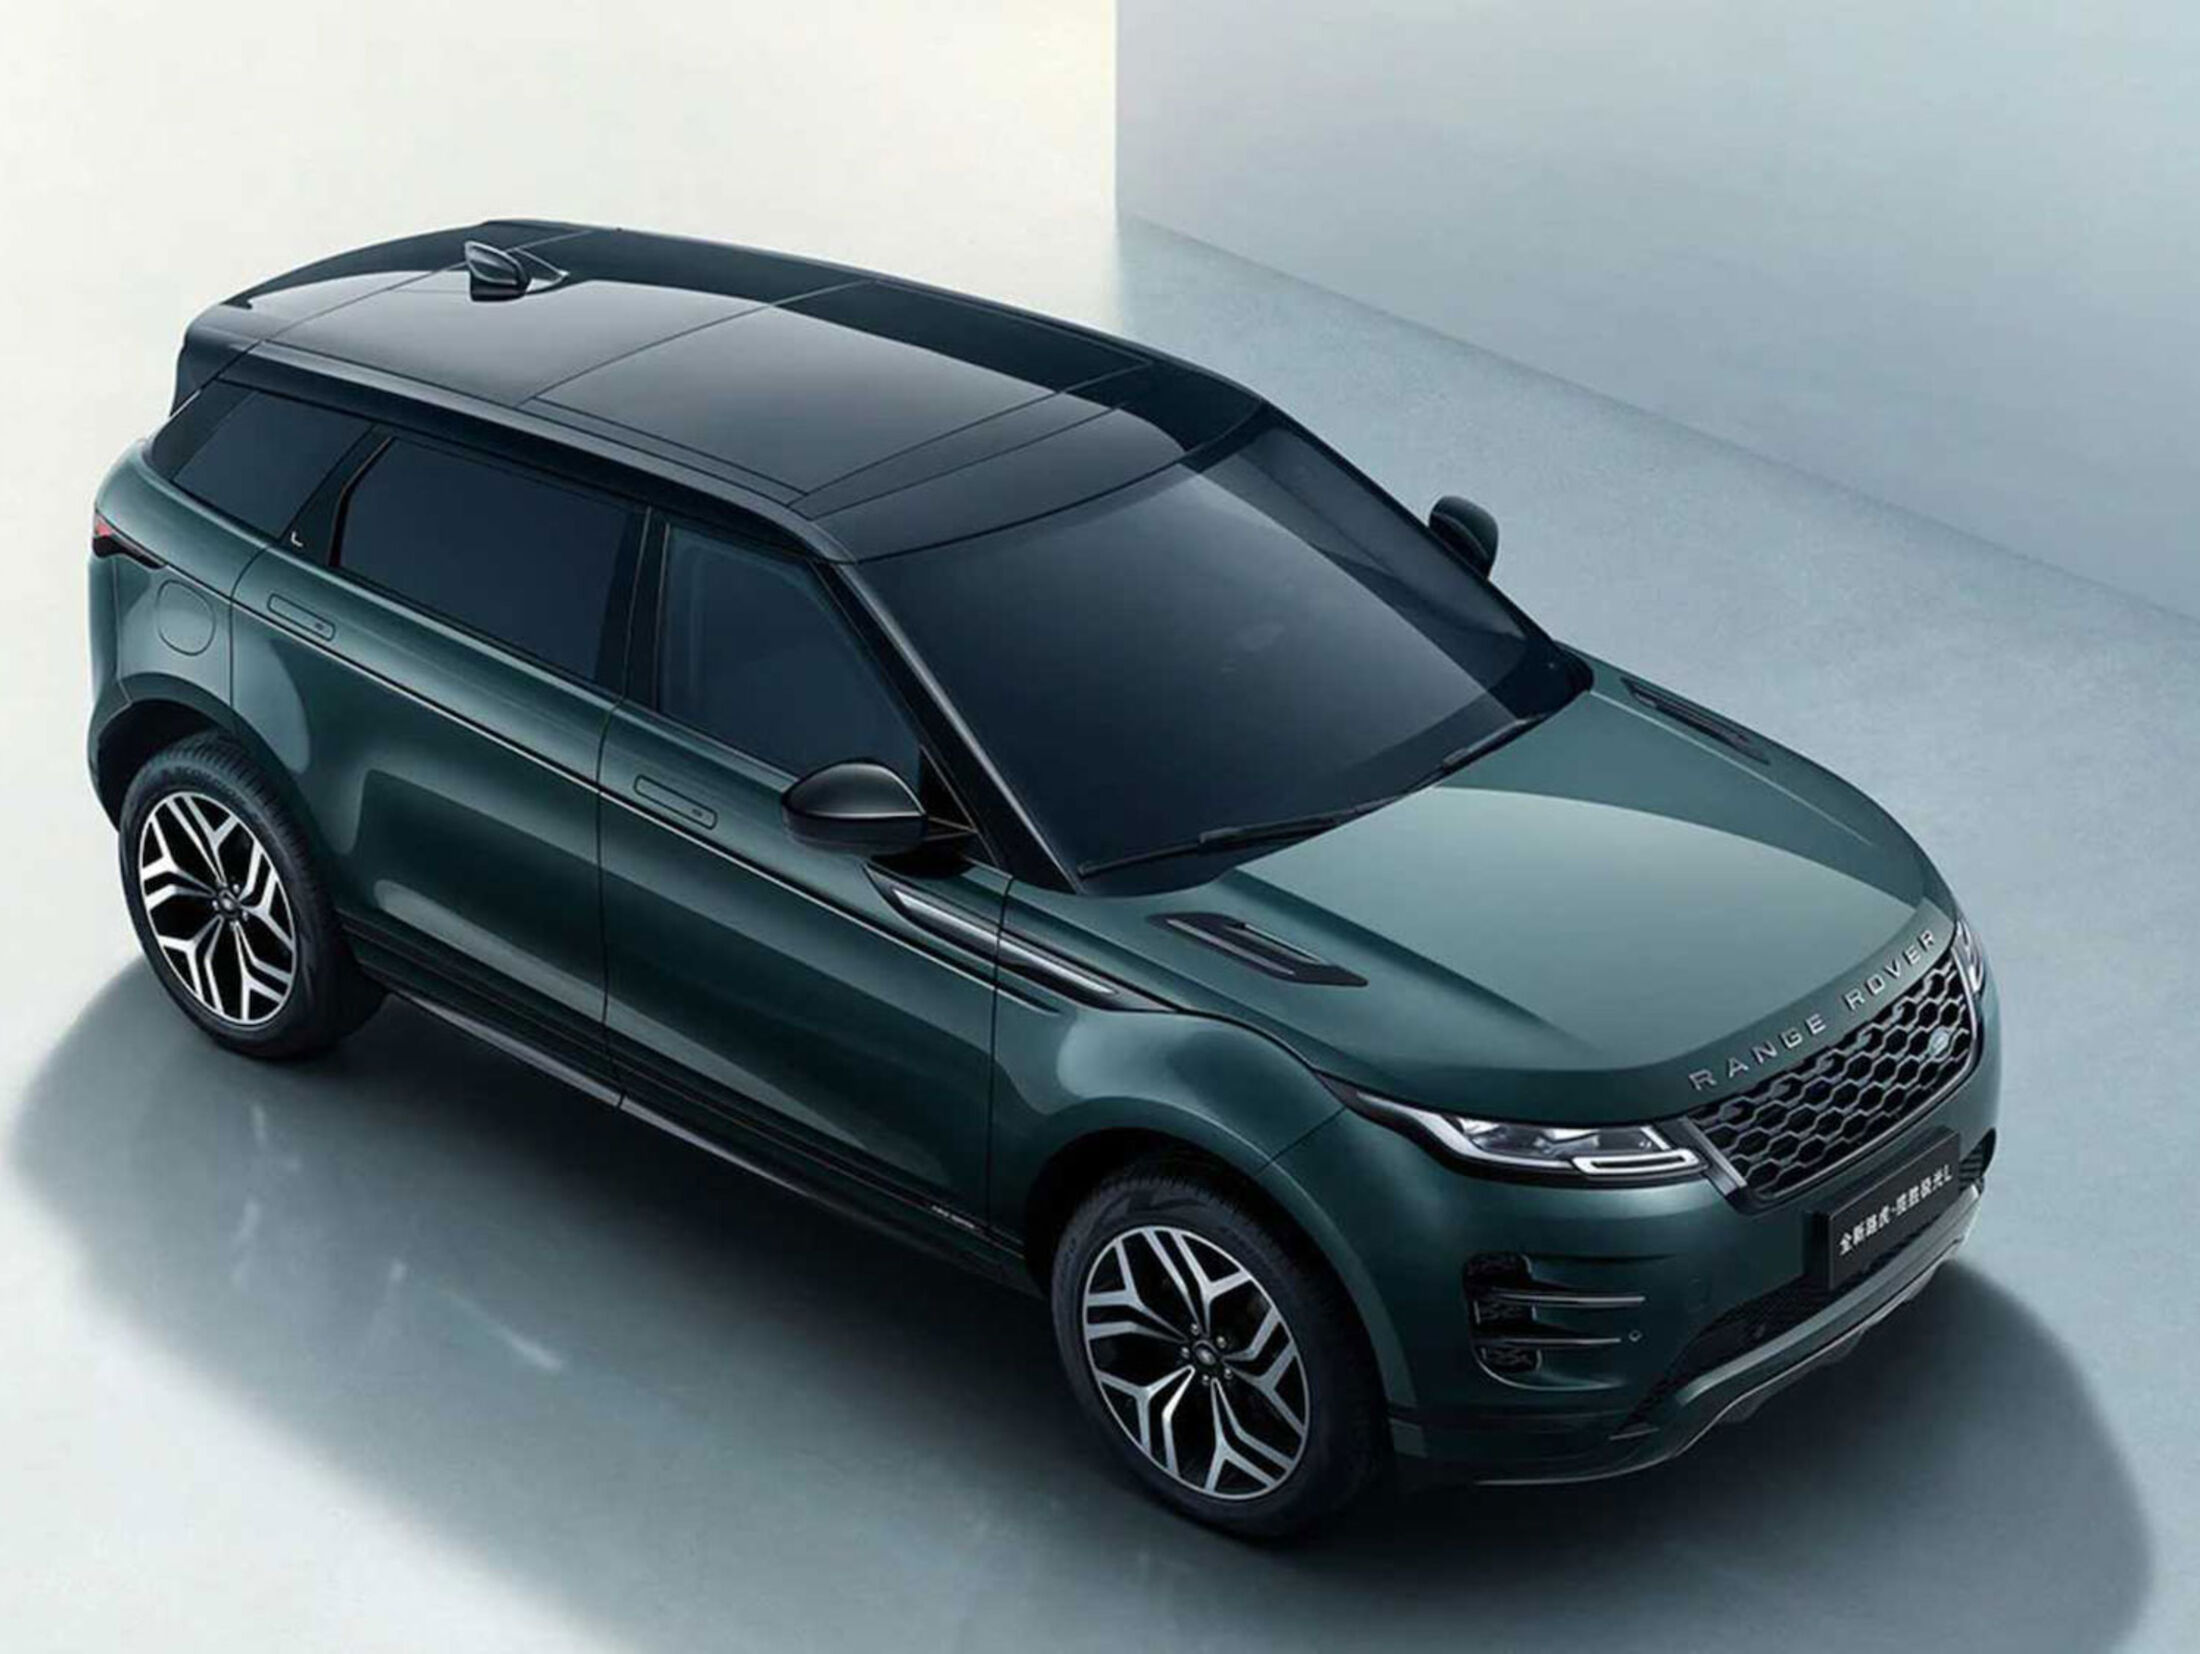 Range Rover Evoque LWB (2021): Langversion für China gestartet